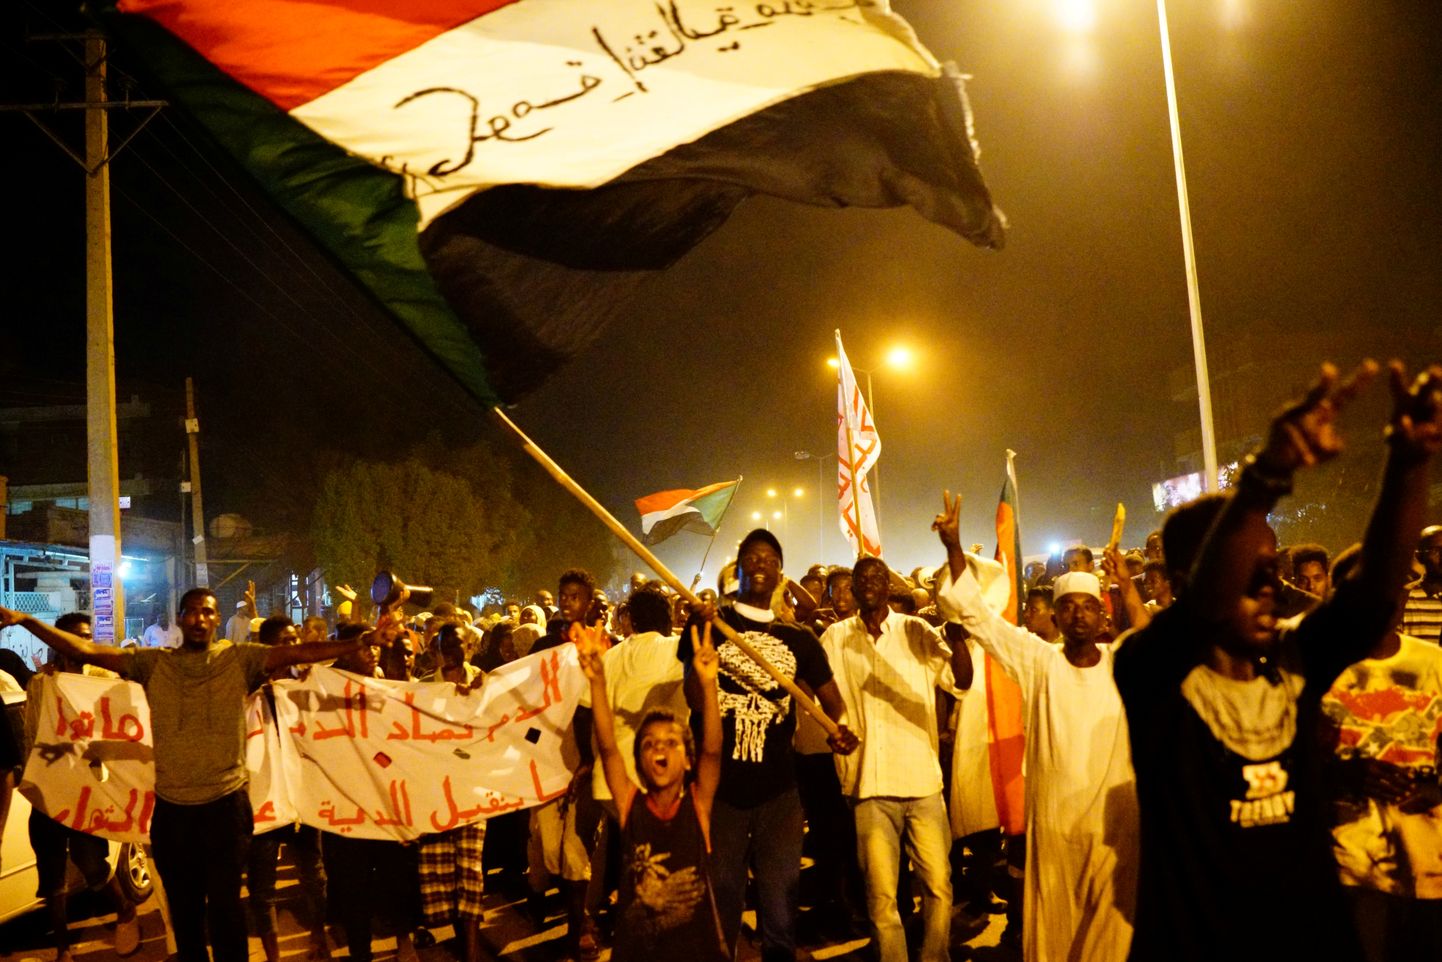 Sudaanlased tsiviilvalitsust nõudmas.